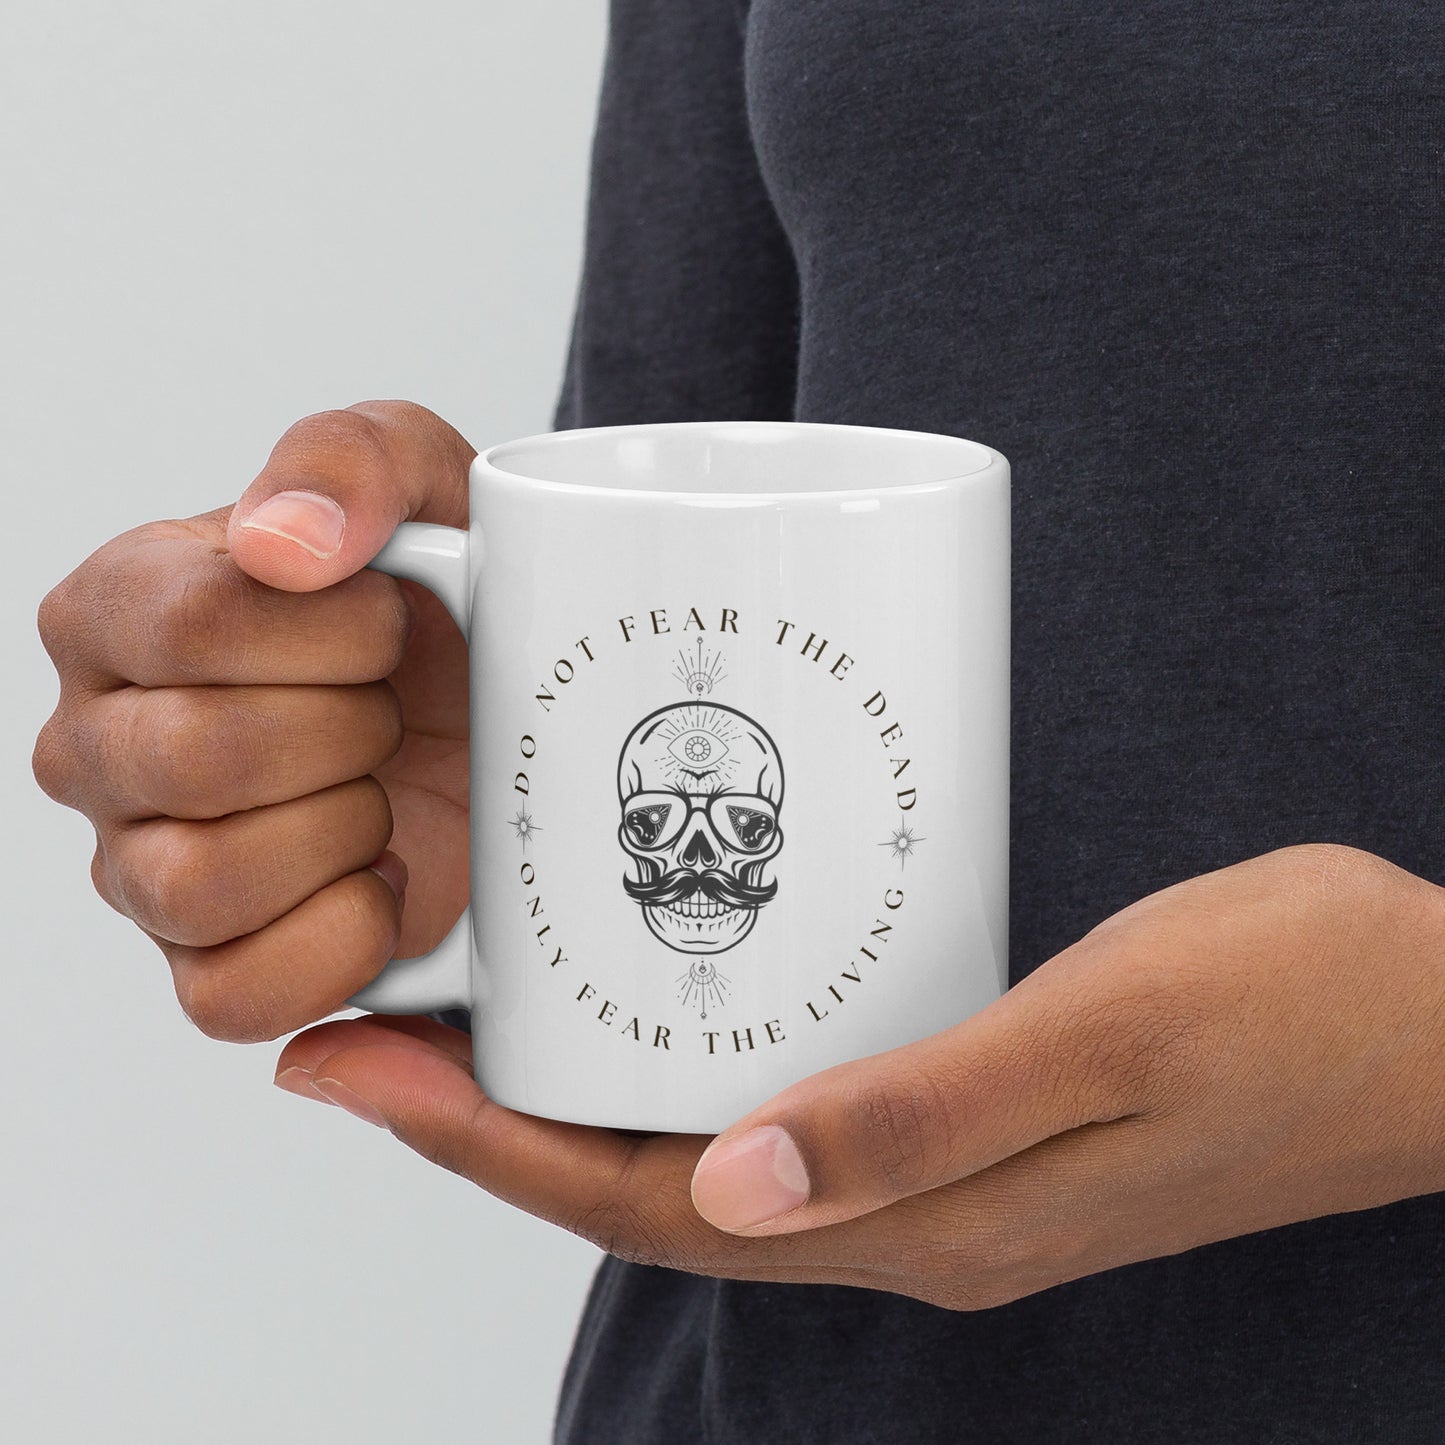 Only Fear the living Skull Mug White glossy mug